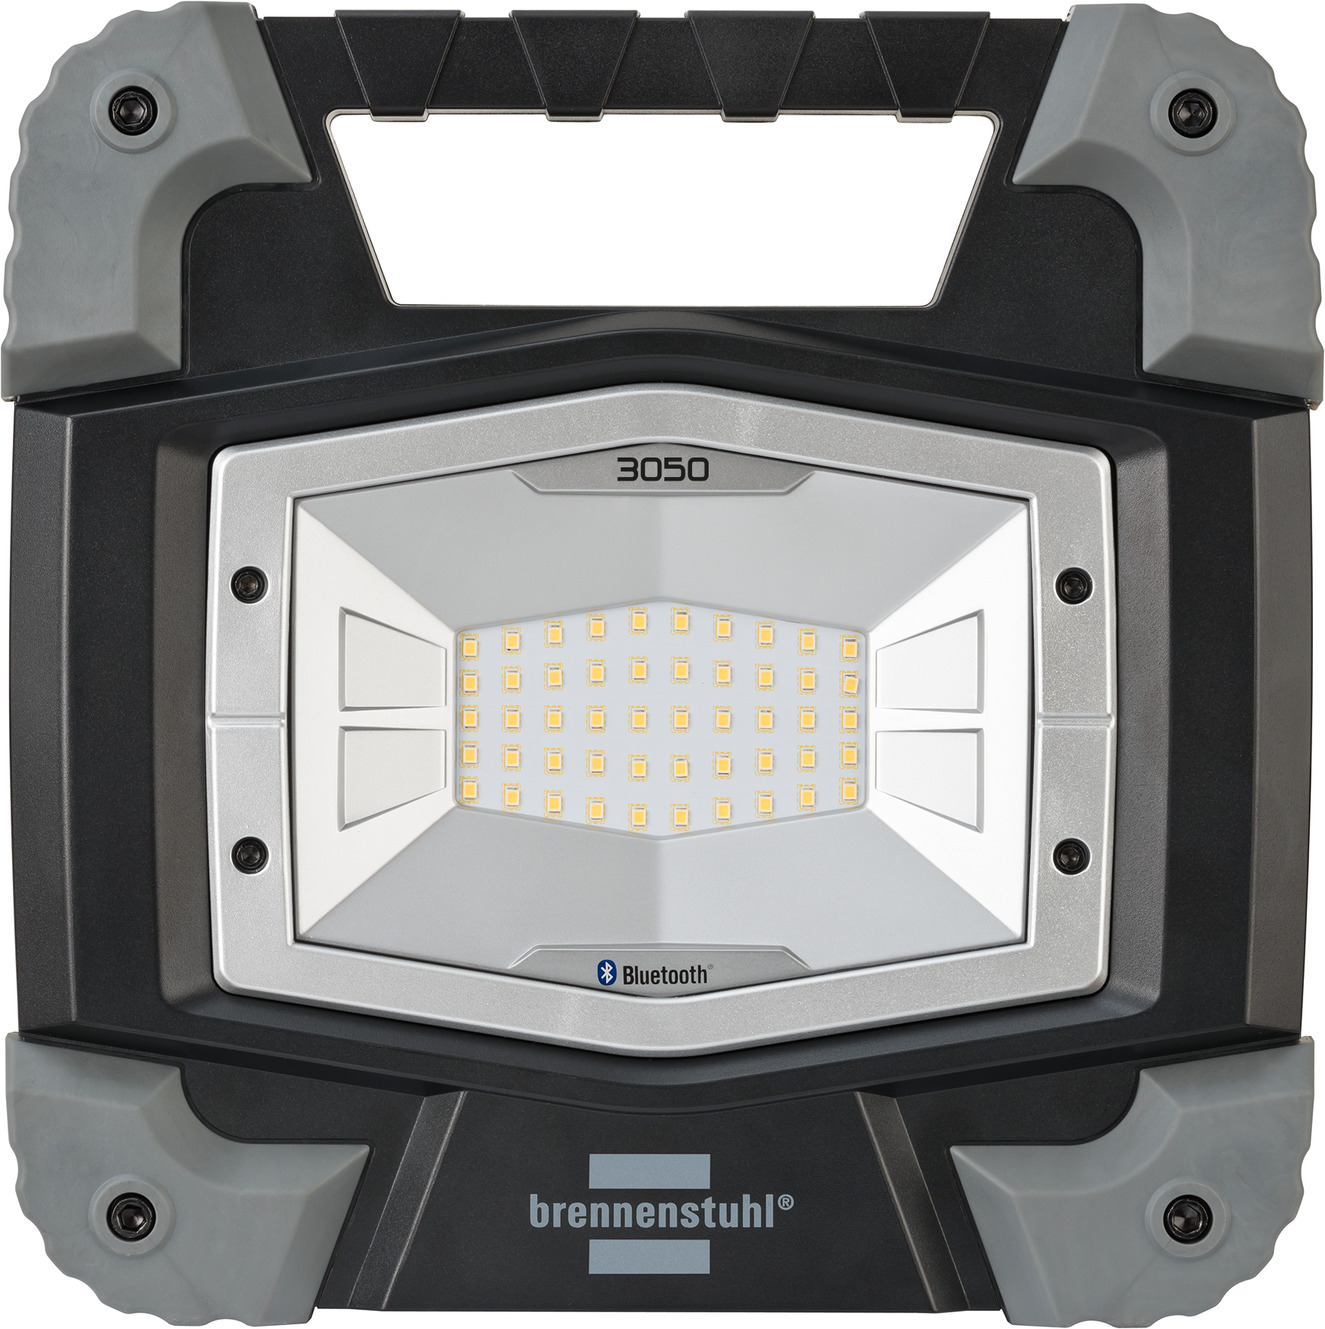 Bluetooth LED Baustrahler TORAN 3050 Lichtsteuerungs-APP brennenstuhl® MB mit 